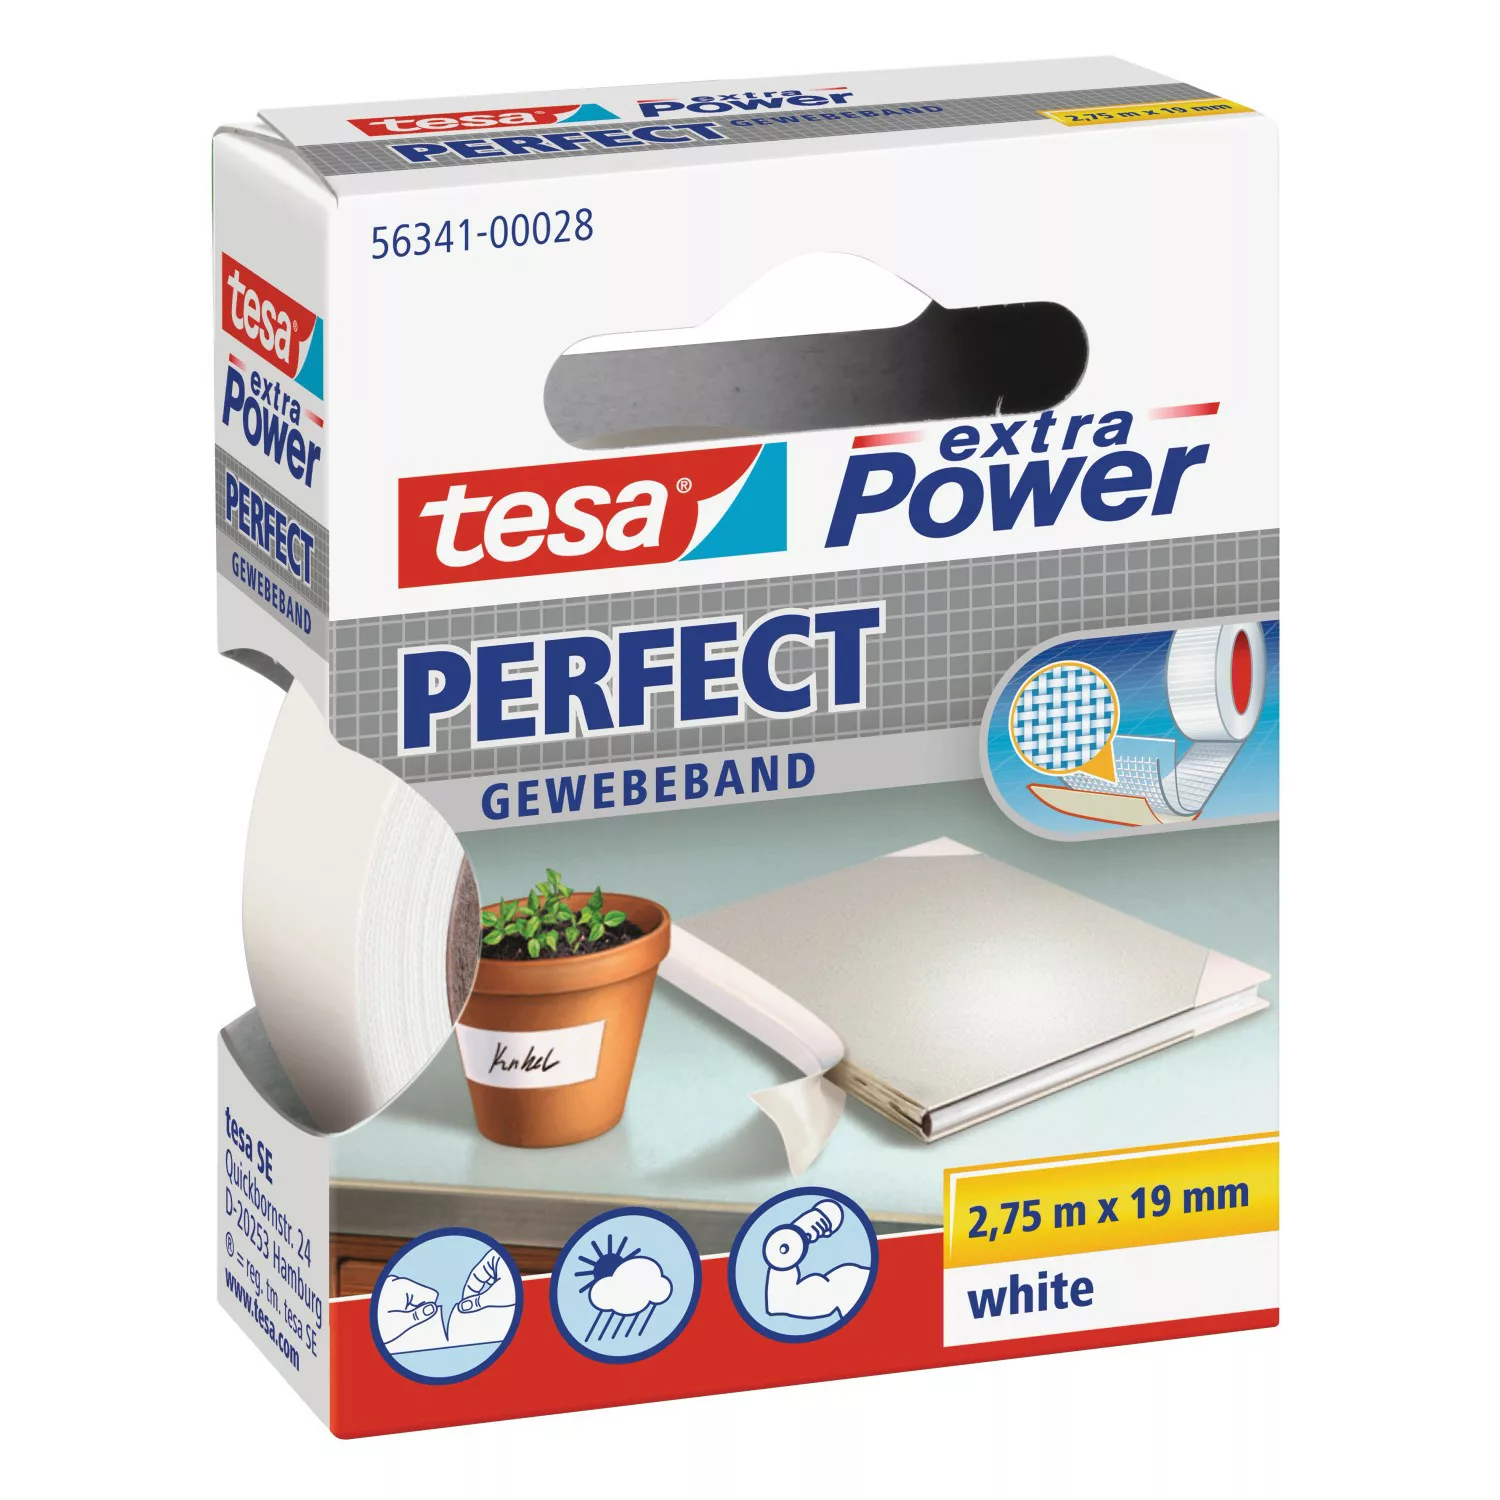 Tesa Extra Power Perfect Gewebeband Weiß 2,75 m x 19 mm günstig online kaufen